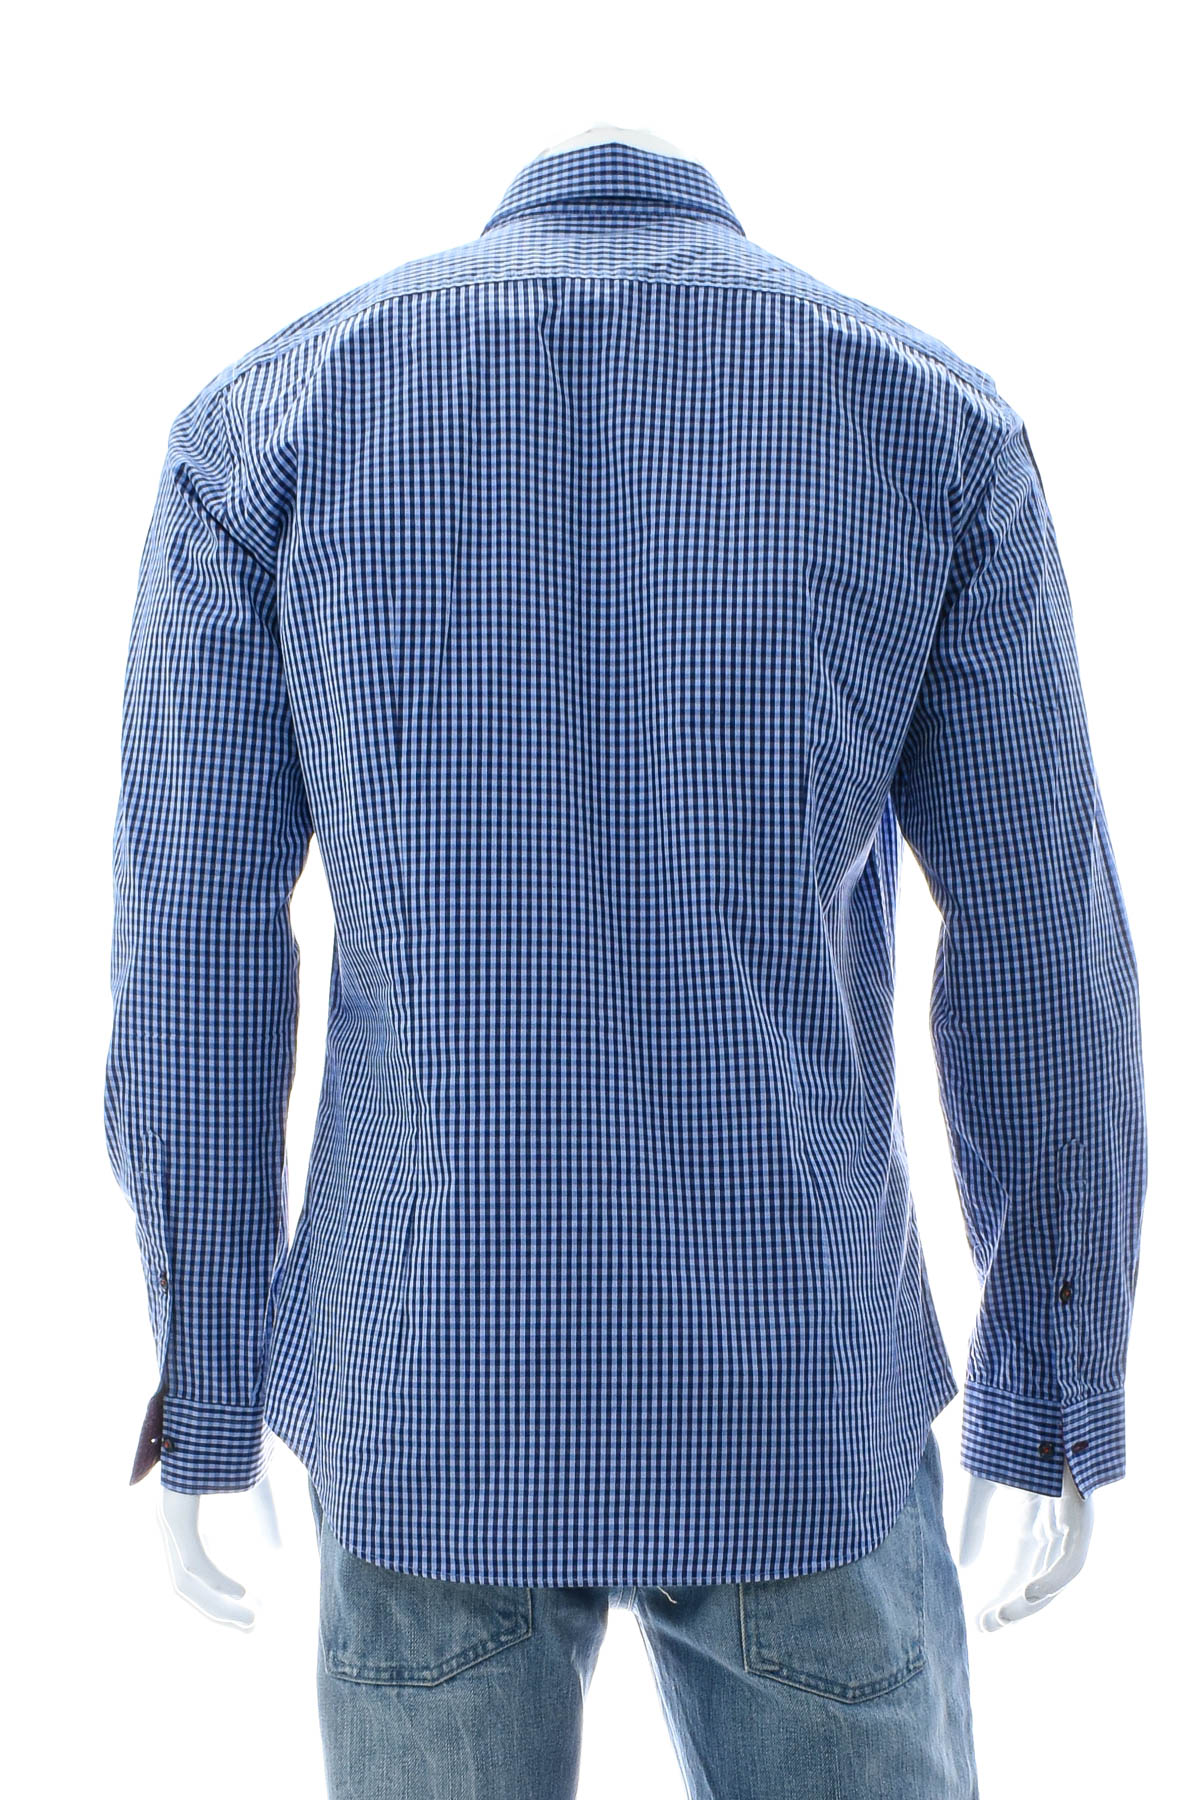 Ανδρικό πουκάμισο - Redford - 1